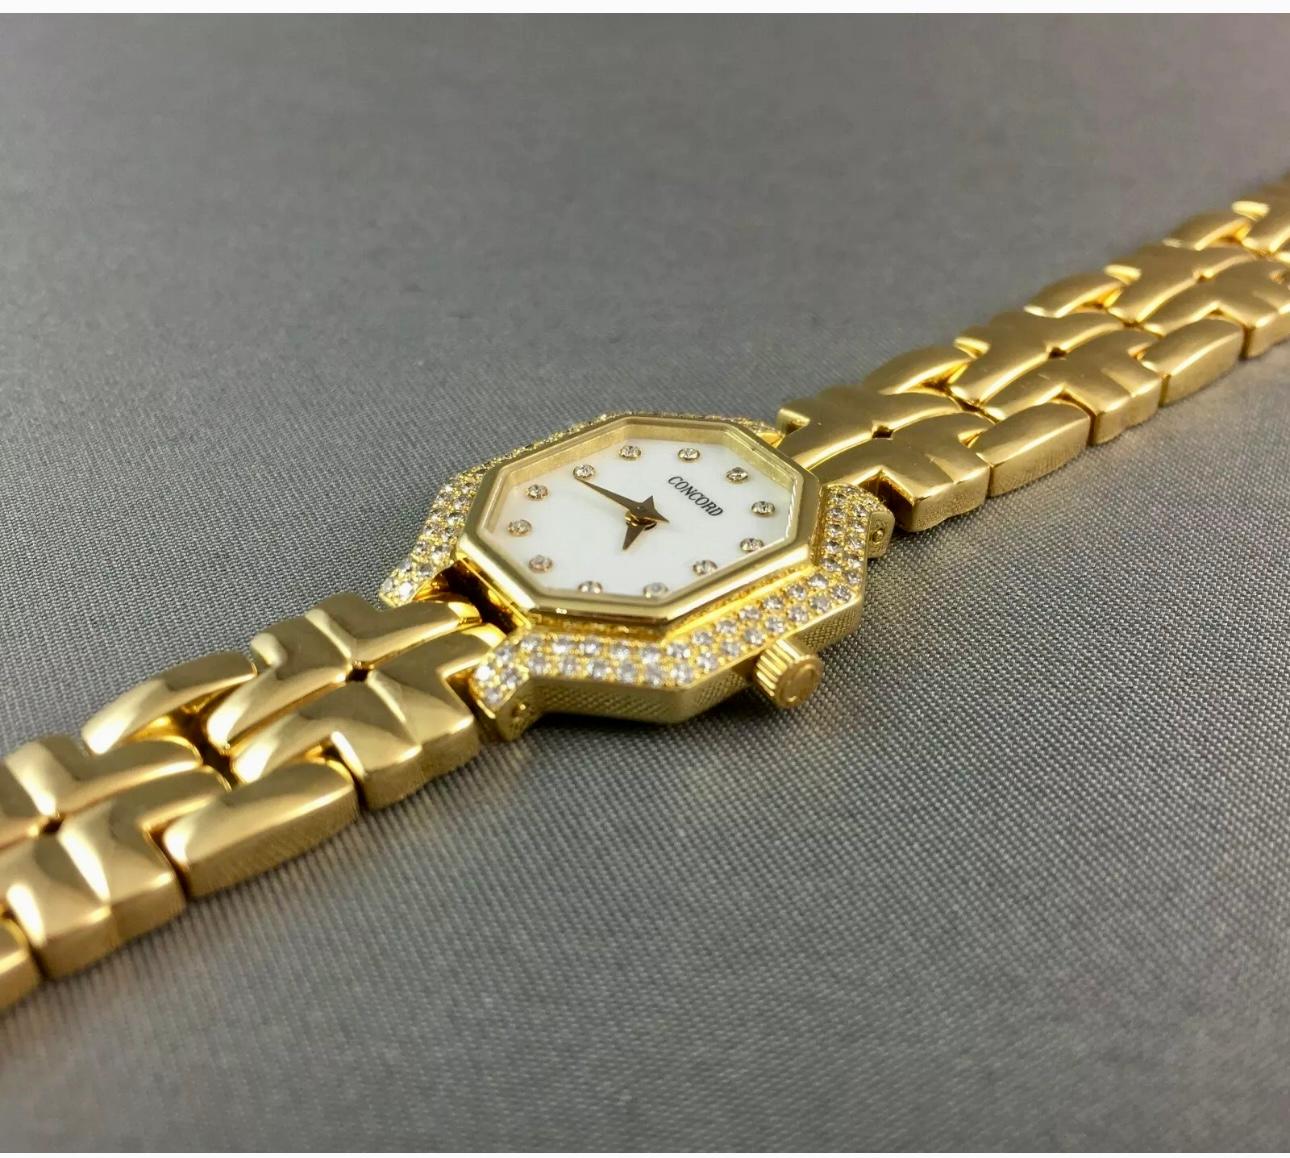 Concord 18k Gold & Diamant Damenuhr Ref. 51.25.160
Beschreibung / Zustand: Alle Uhren wurden professionell überprüft und gewartet, bevor sie zum Verkauf angeboten wurden. 1,30 Karat / Diamanten. 
Goldgehalt: 18 Karat Gelbgold, Gesamtgewicht 68,4